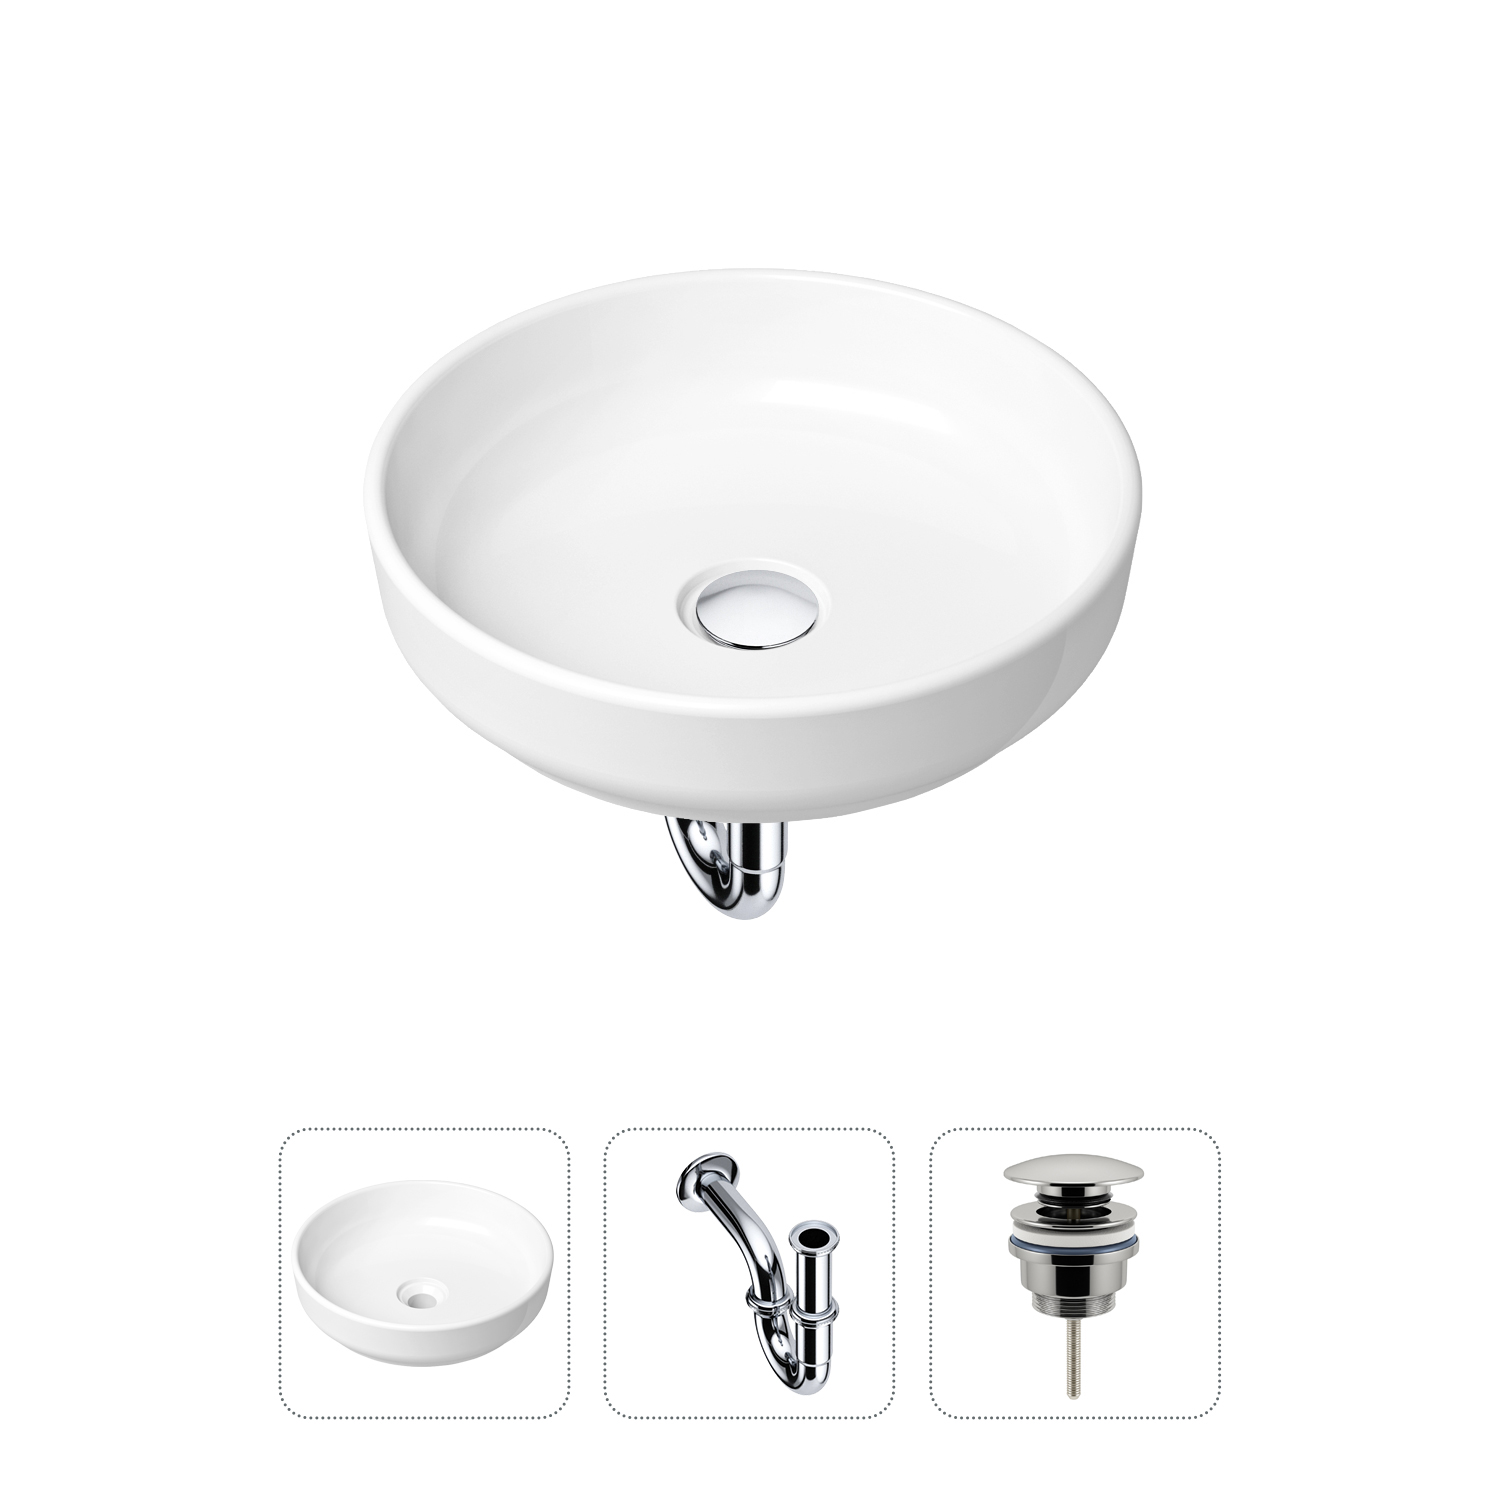 Комплект 3 в 1 Lavinia Boho Bathroom Sink 21520164: раковина 40 см, сифон, донный клапан